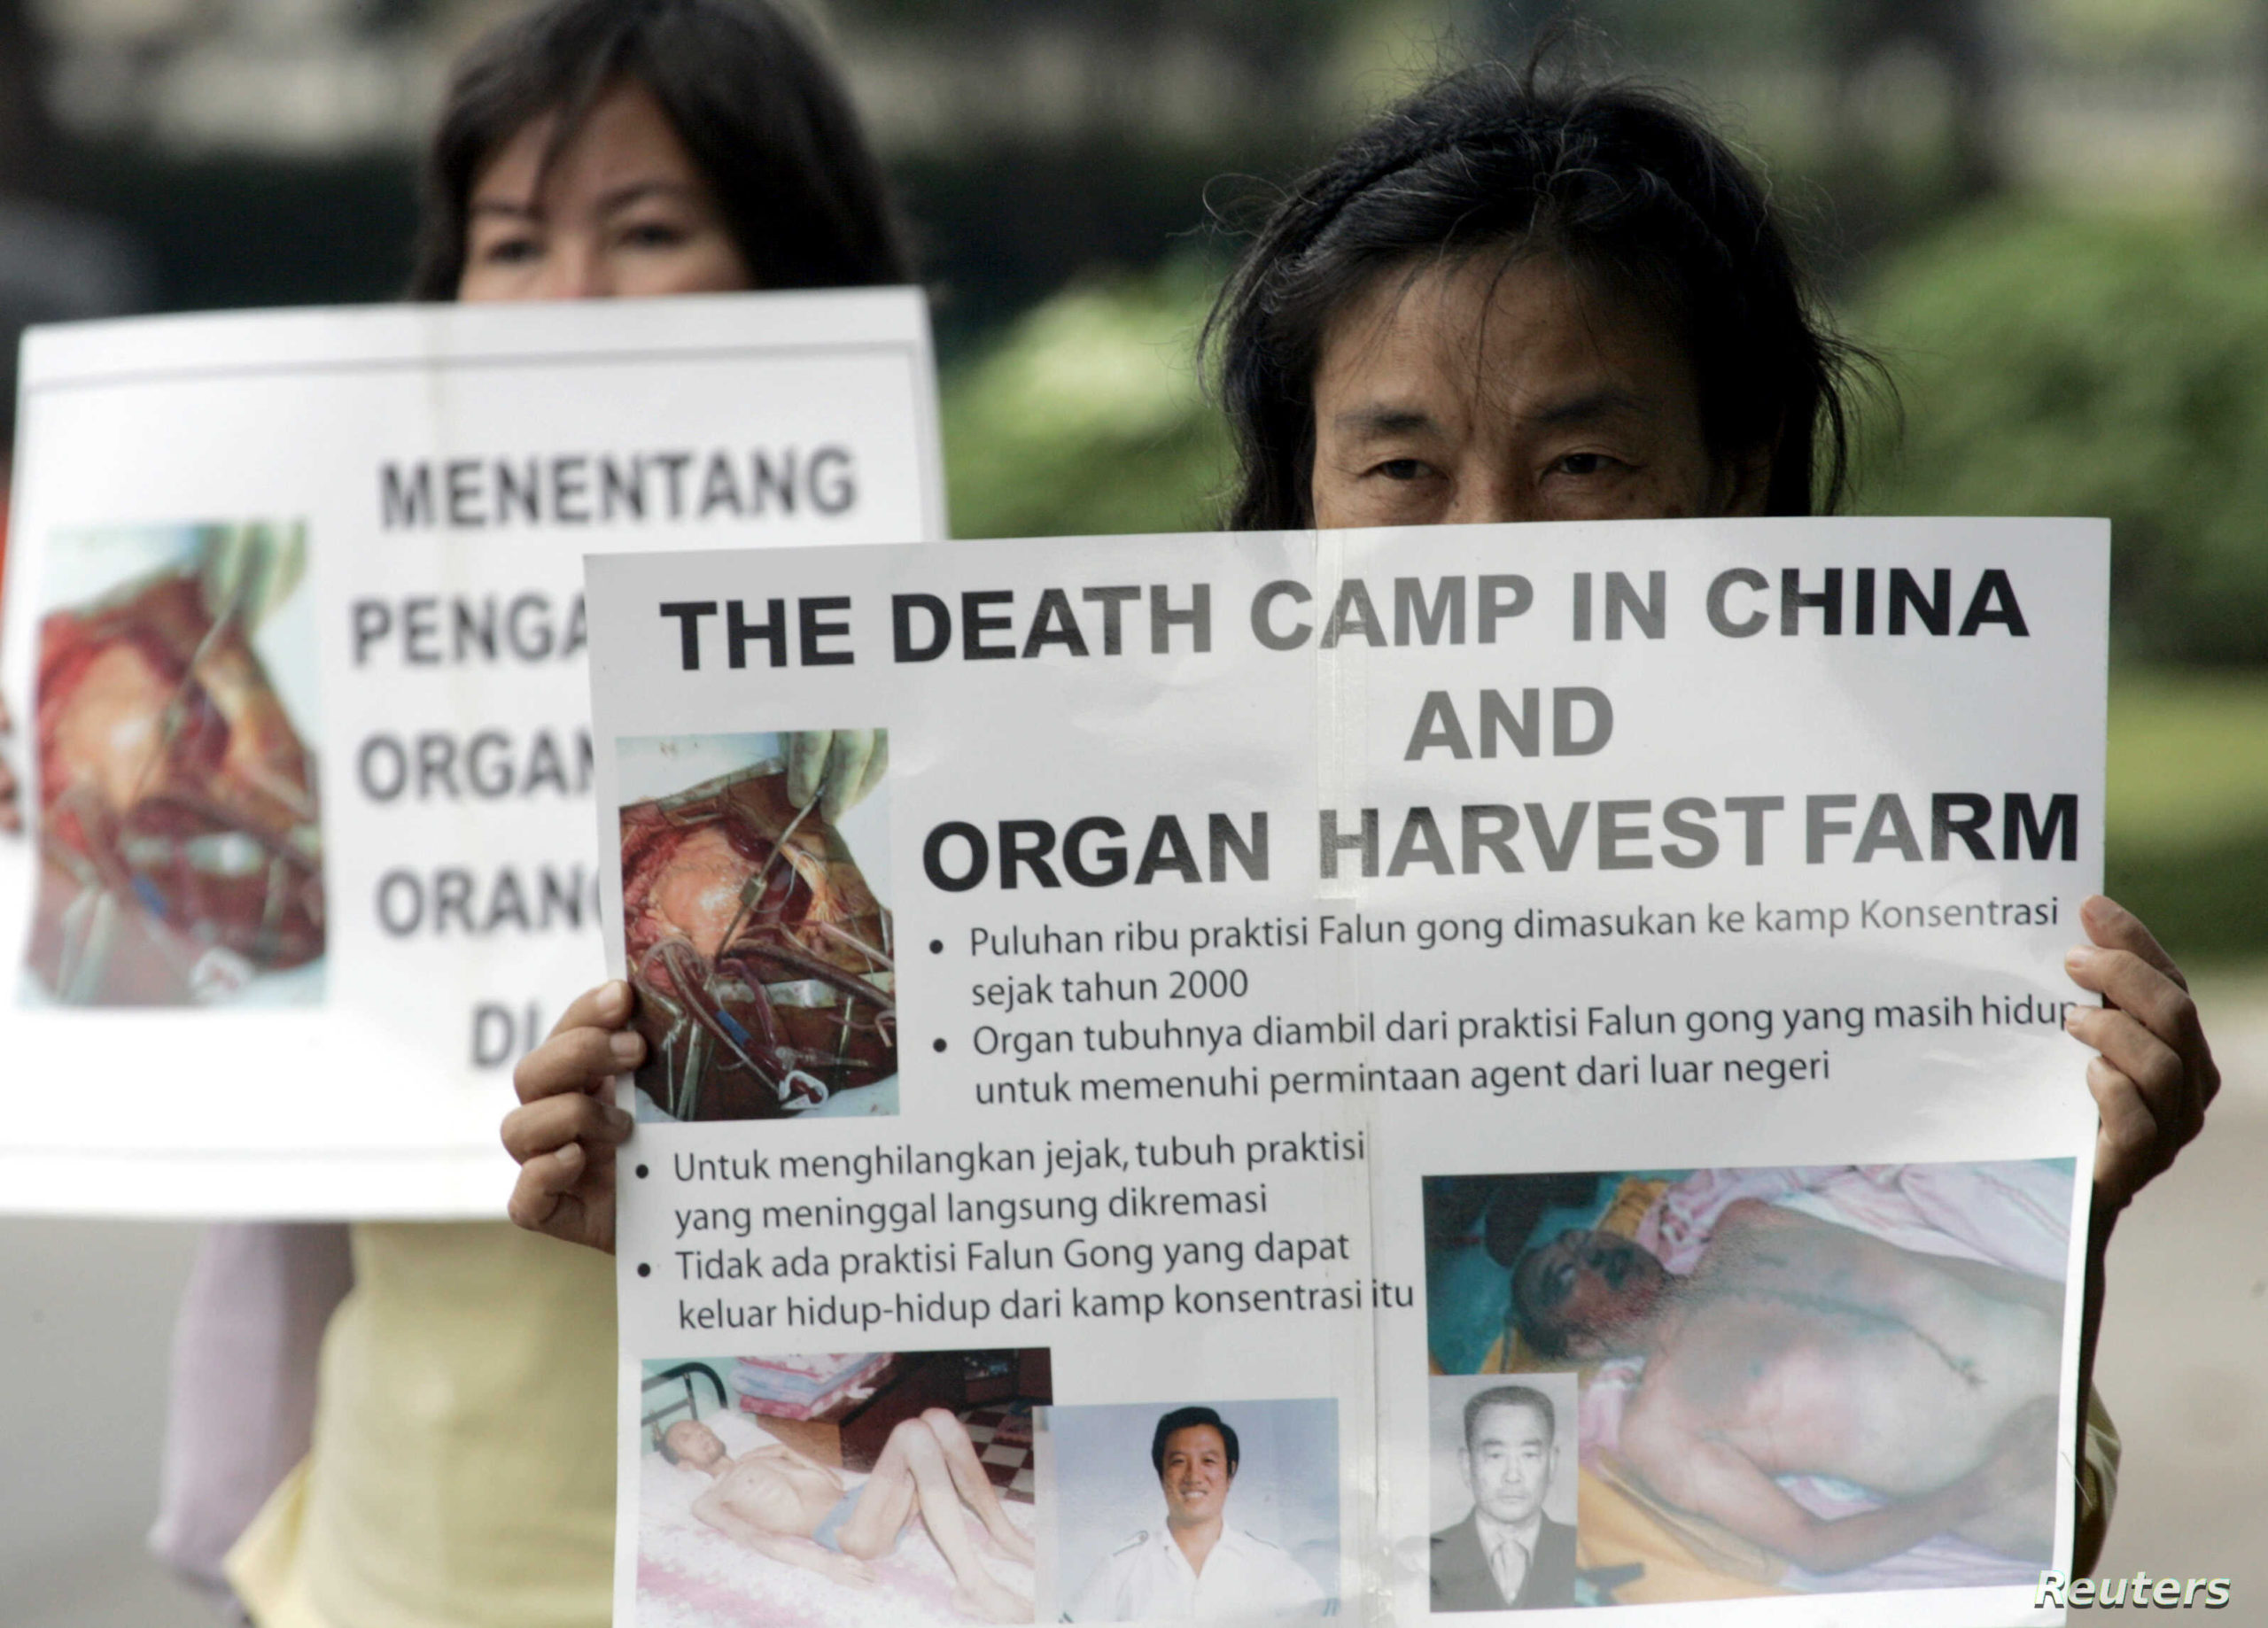 Confirman que China practica la extracción forzada de órganos en prisioneros